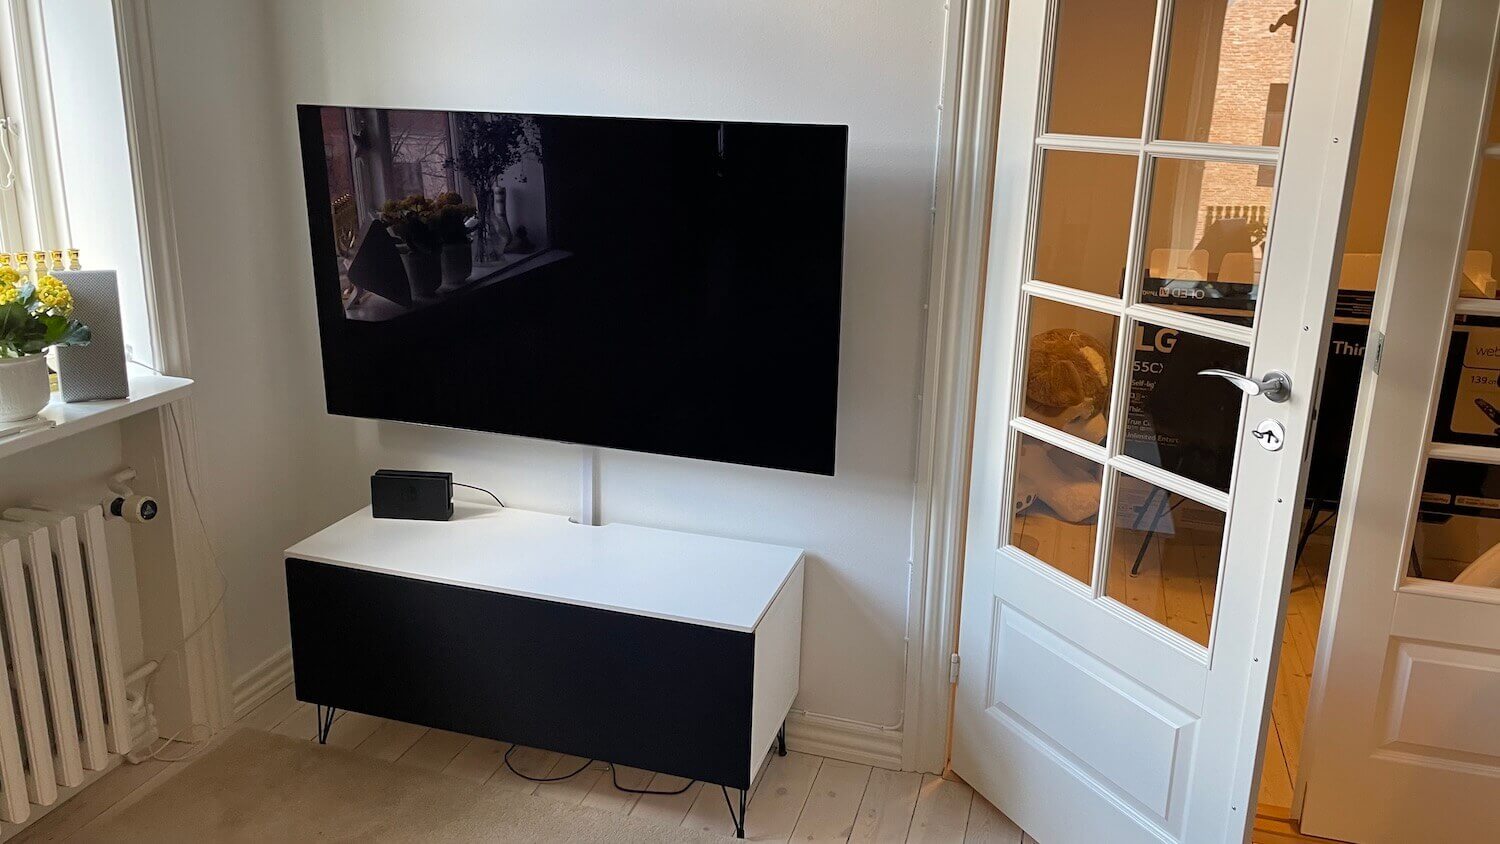 Montering af LG OLED TV